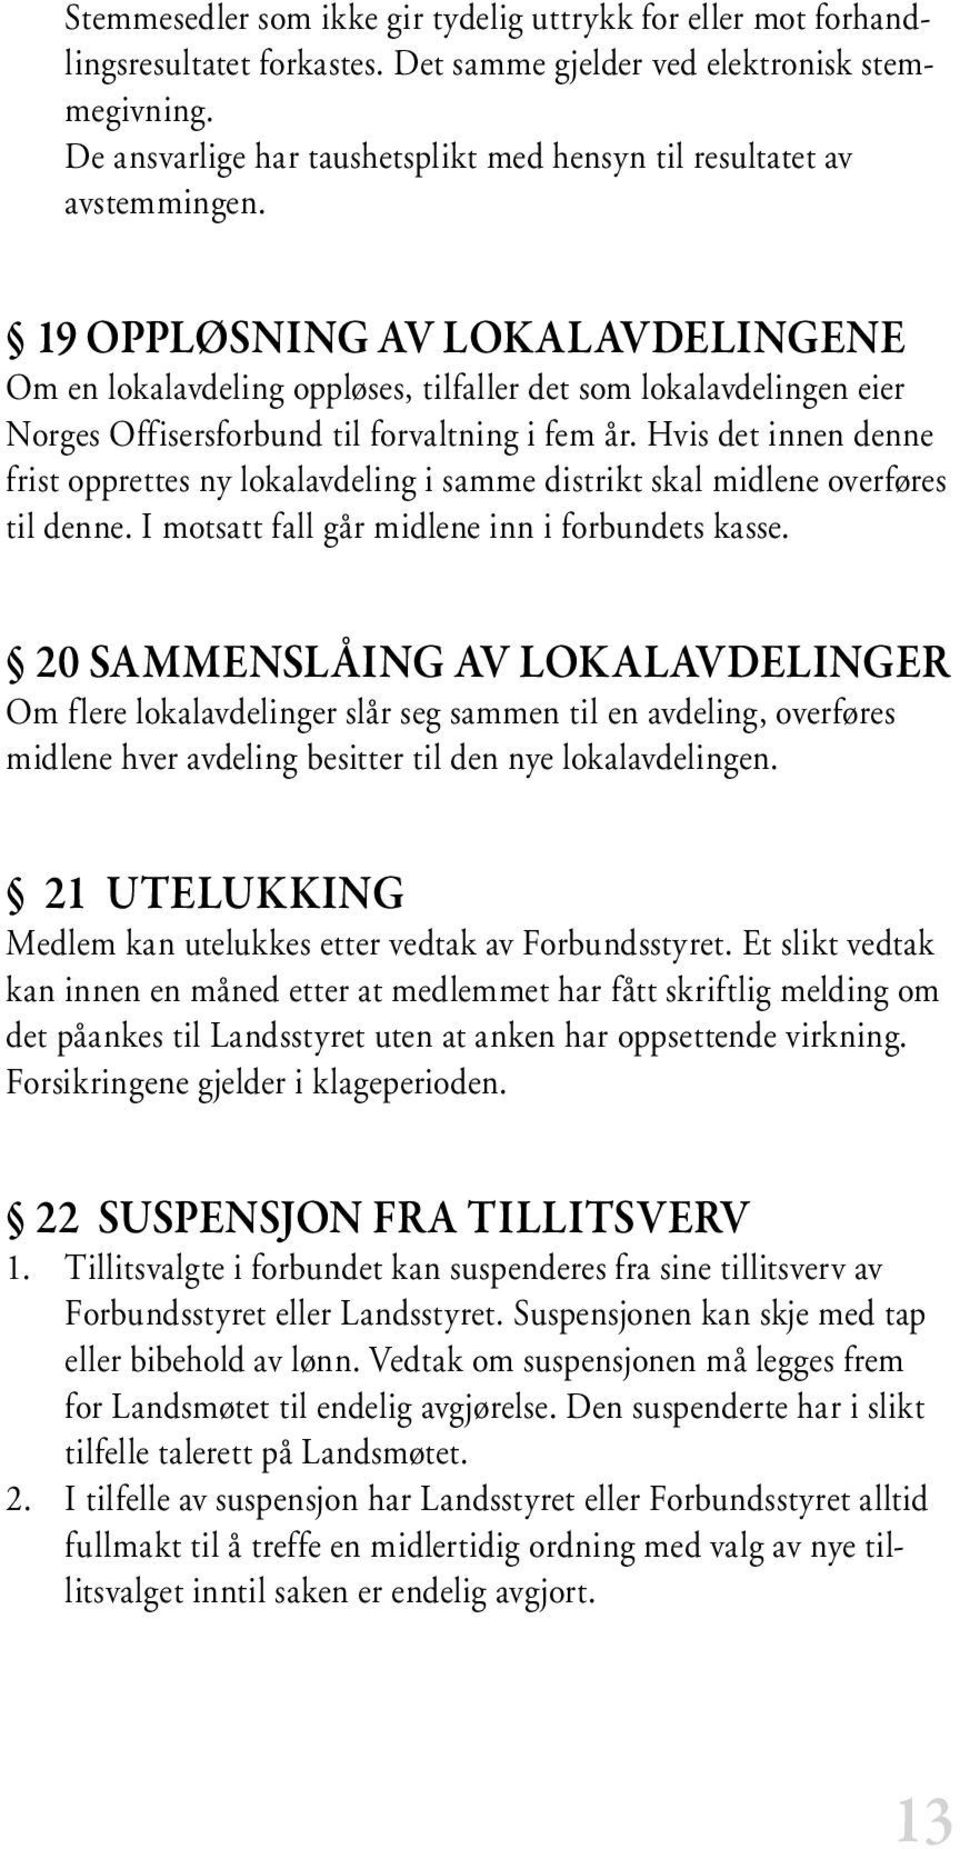 19 OPPLØSNING AV LOKALAVDELINGENE Om en lokalavdeling oppløses, tilfaller det som lokalavdelingen eier Norges Offisersforbund til forvaltning i fem år.